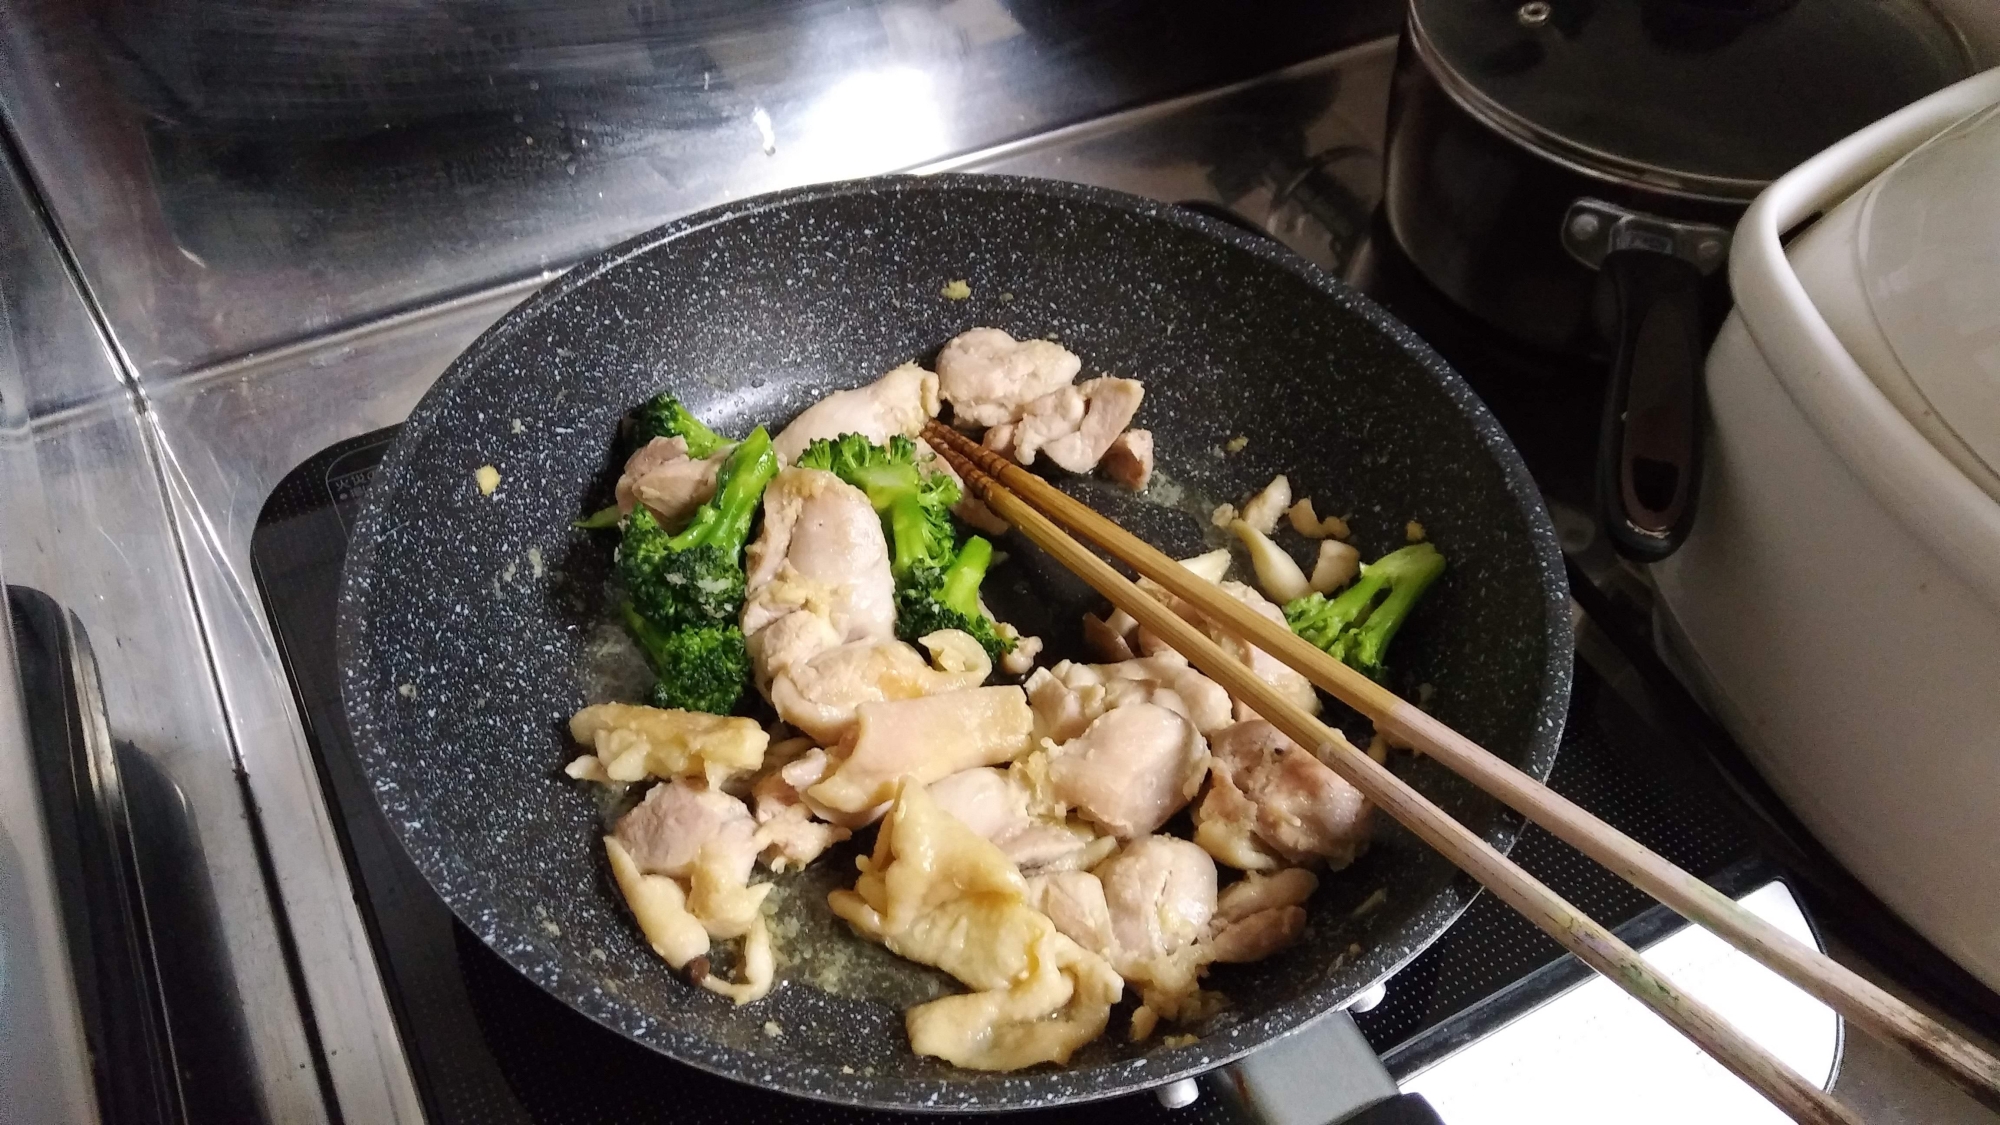 鶏もも肉ときのことブロッコリーの中華風炒め